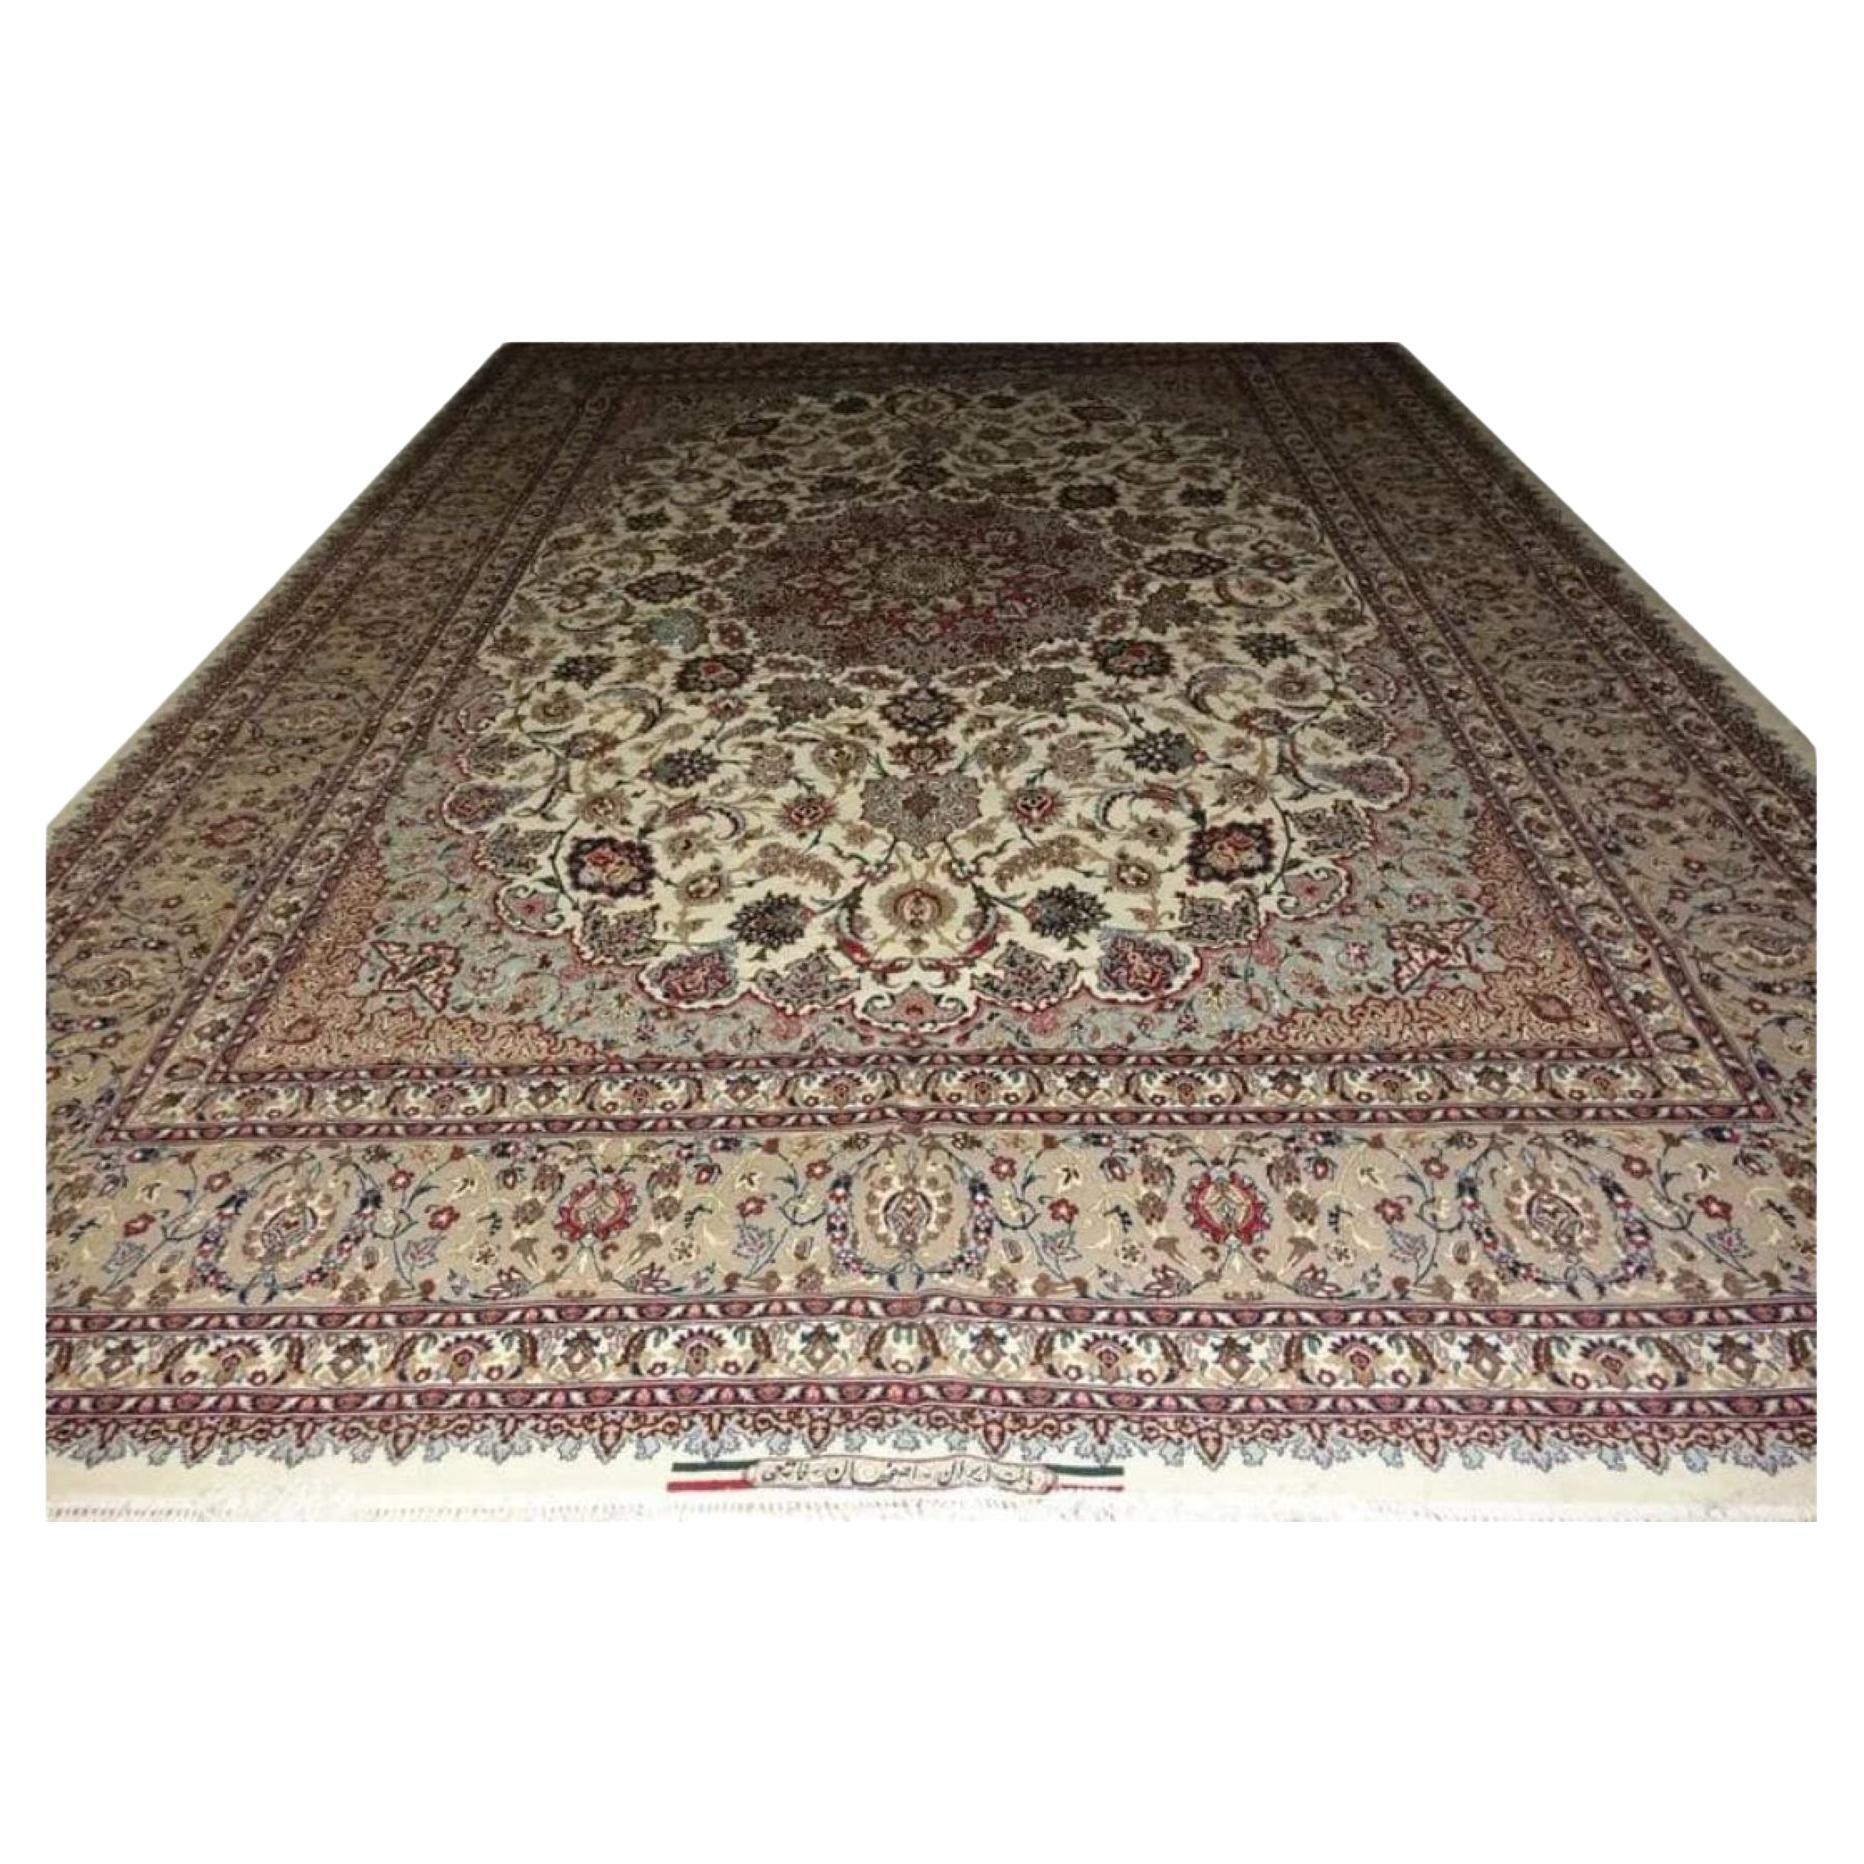 Très beau tapis persan d'Ispahan en soie et laine - 10' x 13'